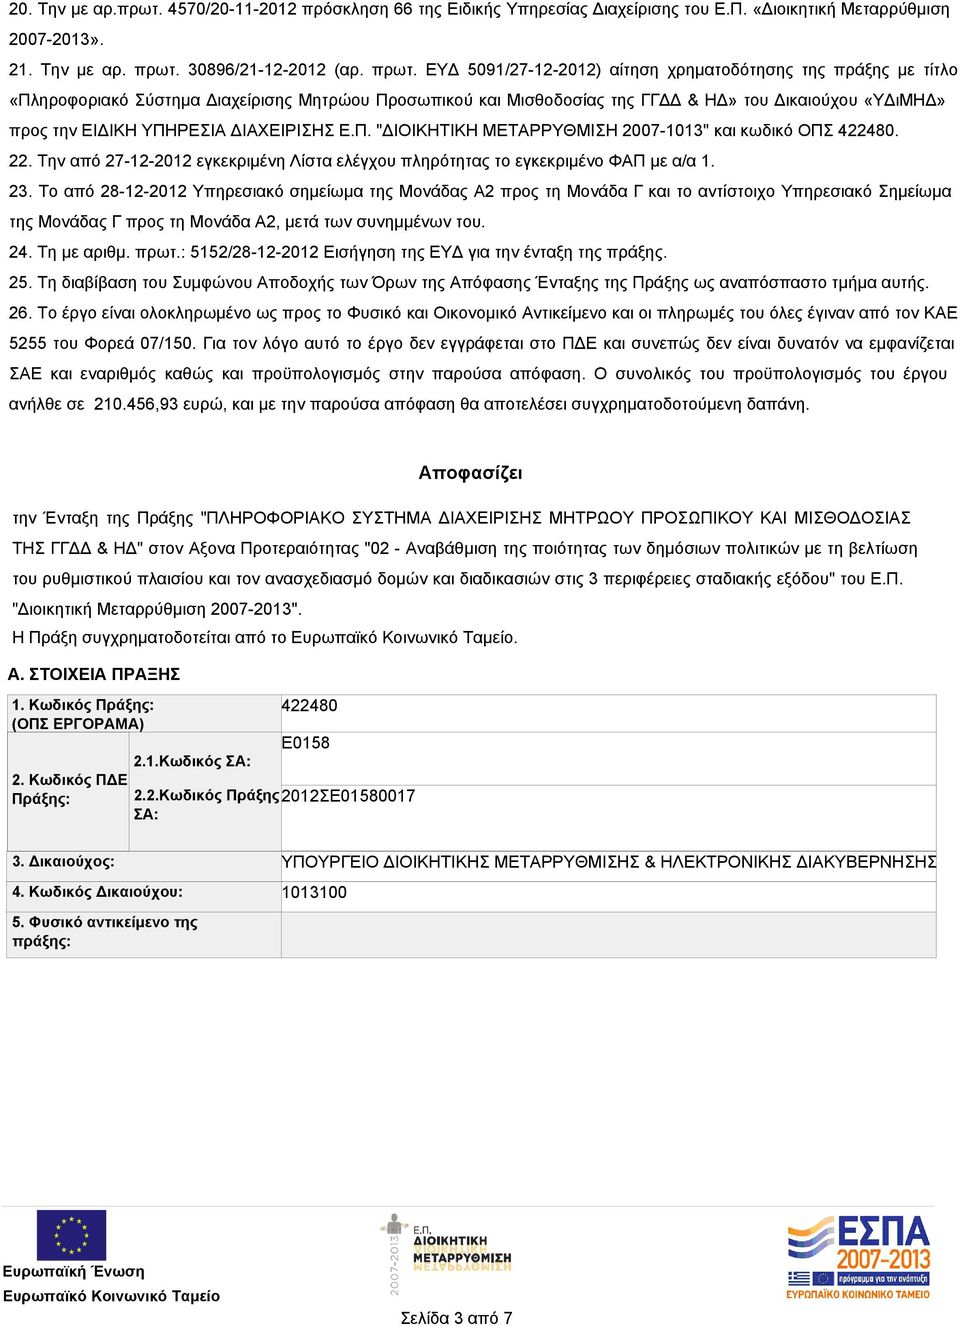 ΕΥΔ 5091/27-12-2012) αίτηση χρηματοδότησης της πράξης με τίτλο «Πληροφοριακό Σύστημα Διαχείρισης Μητρώου Προσωπικού και Μισθοδοσίας της ΓΓΔΔ & ΗΔ» του Δικαιούχου «ΥΔιΜΗΔ» προς την ΕΙΔΙΚΗ ΥΠΗΡΕΣΙΑ